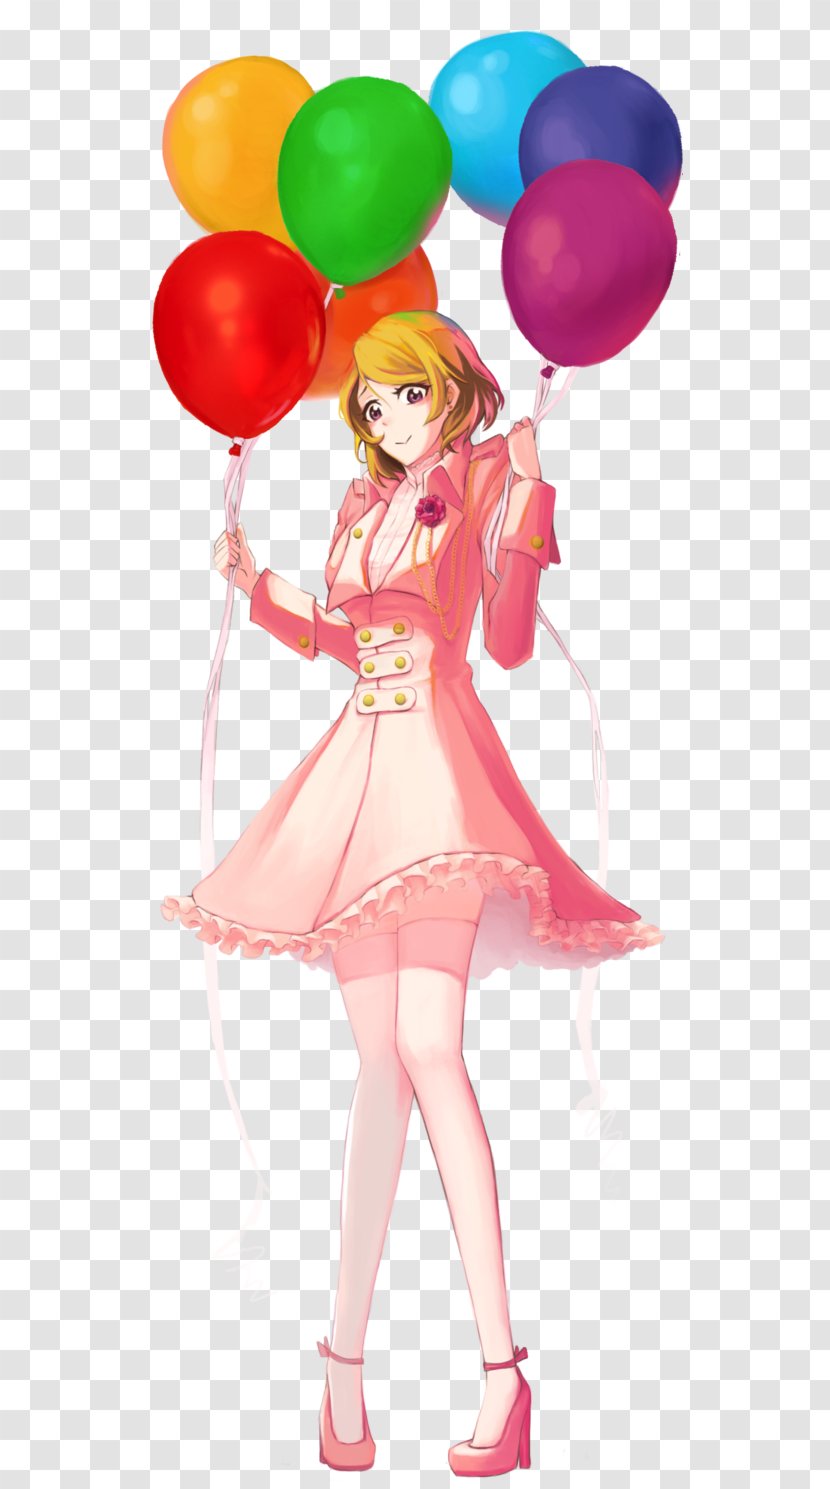 Balloon Cartoon Pink M Character - Hanayo Koizumi Transparent PNG